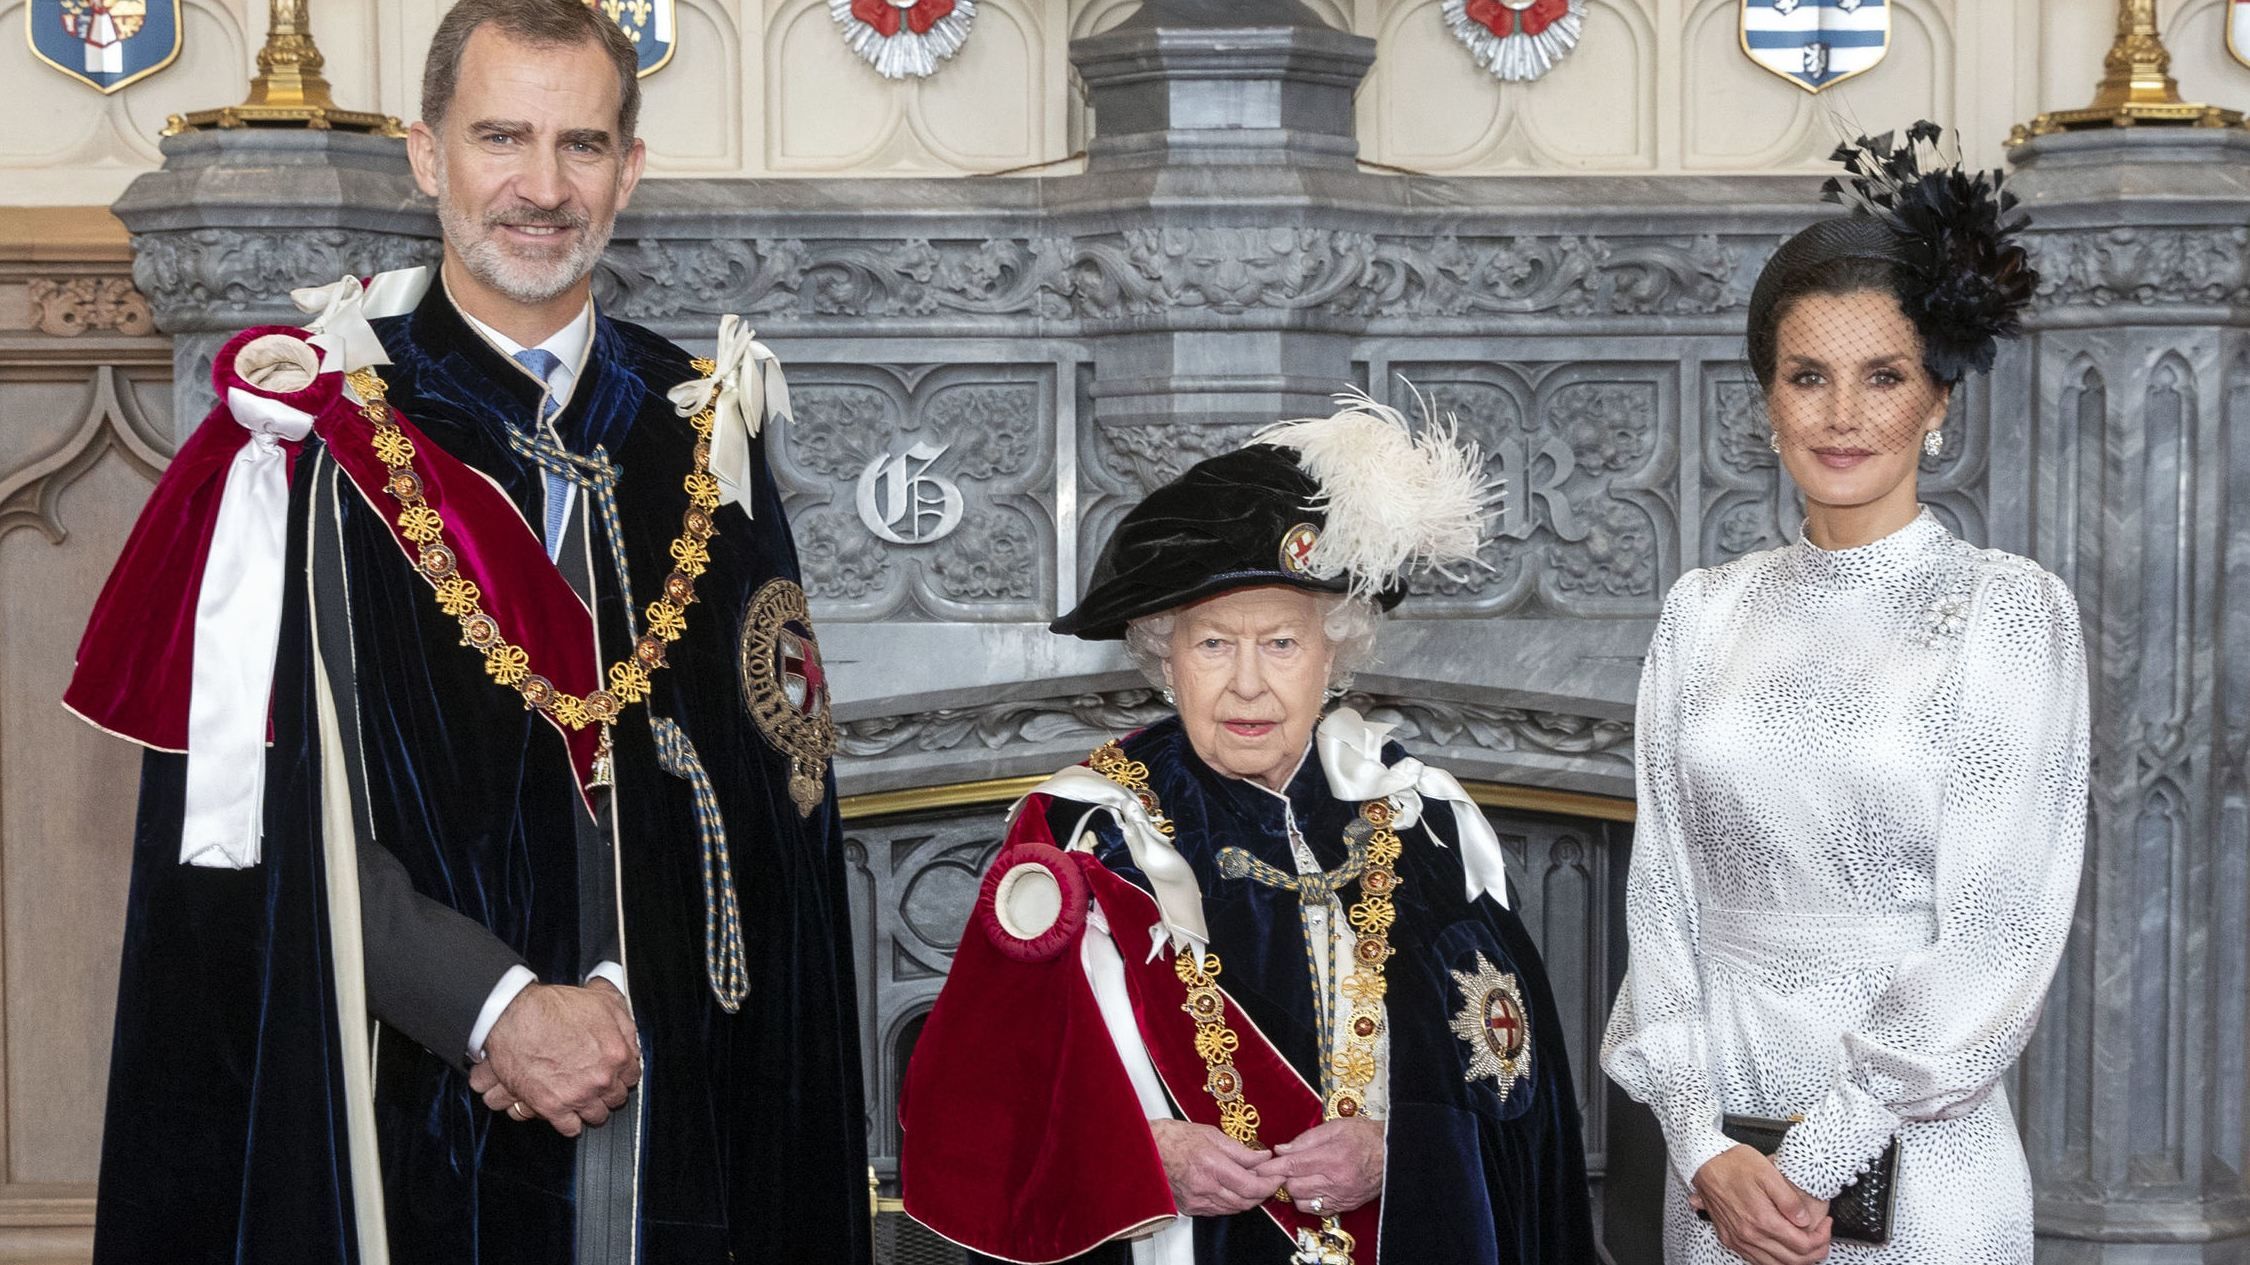 Образ на мільйон: королева Летиція засвітила сумку за 1400 євро на зустрічі з Єлизаветою ІІ